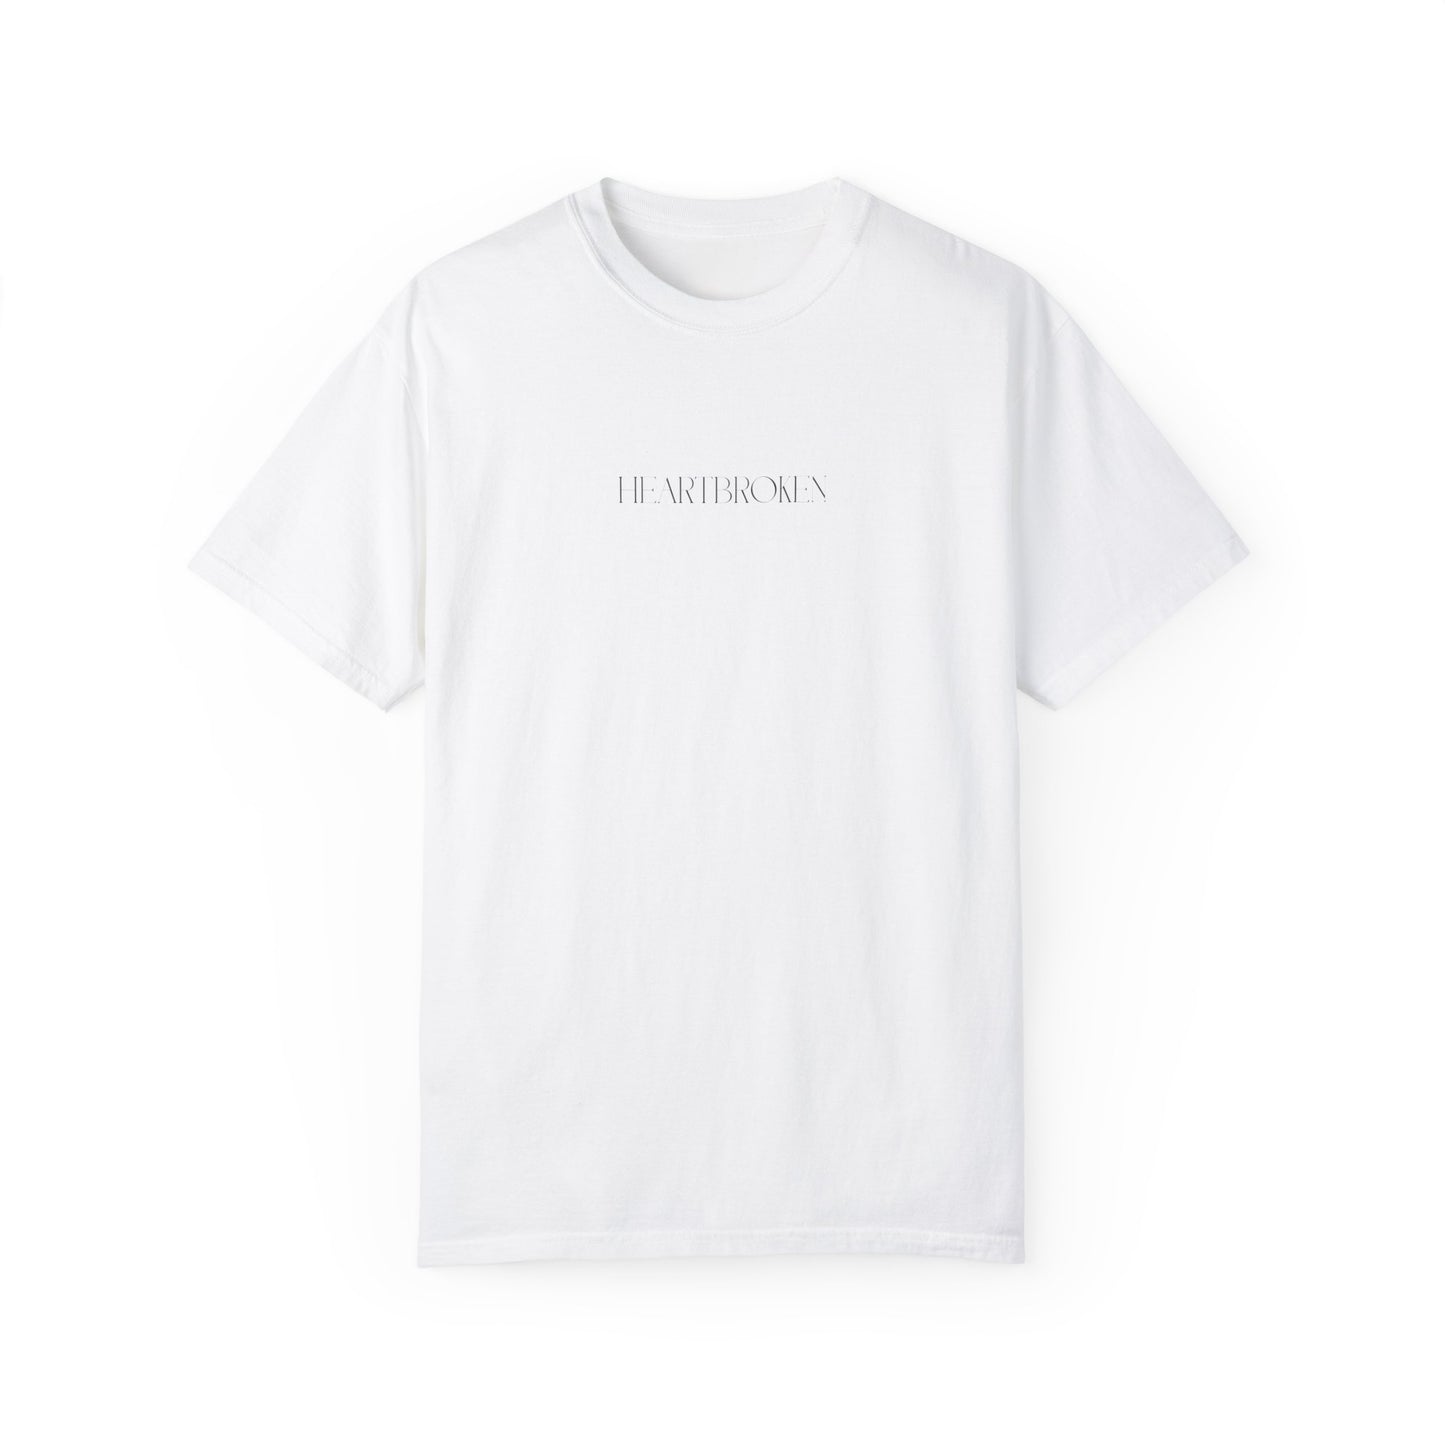 "Heartbroken" Unisex T-shirt